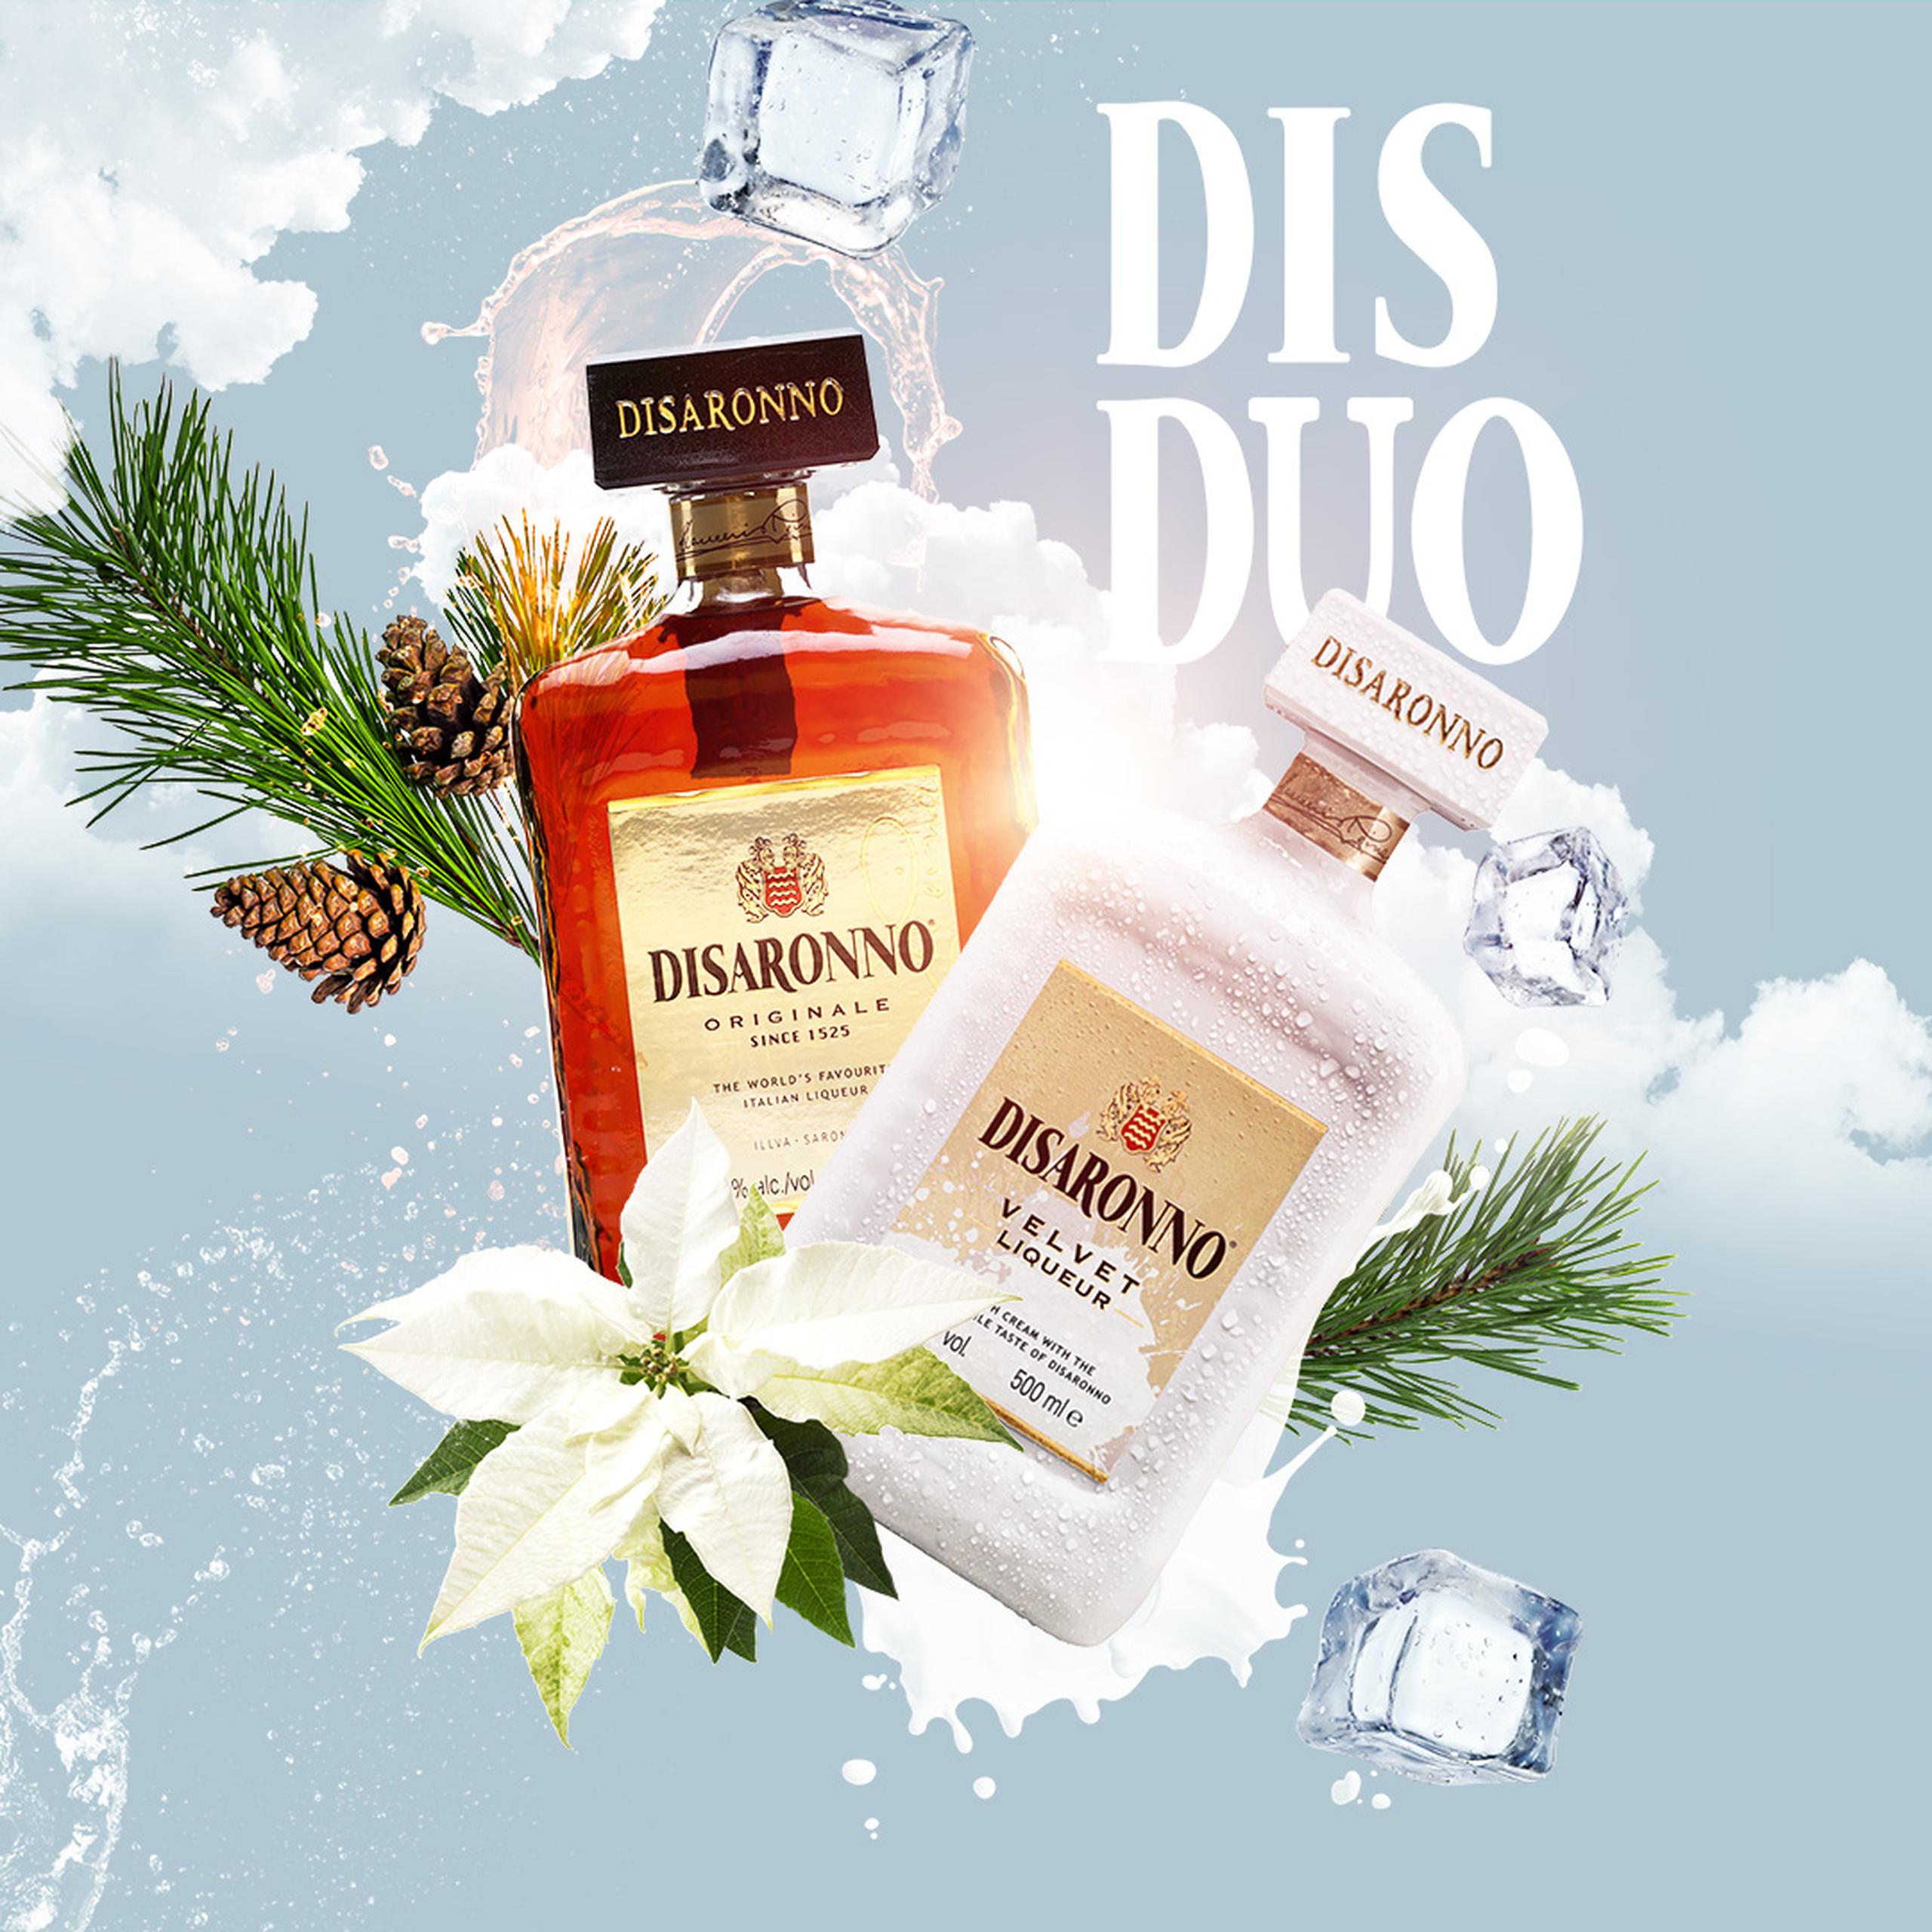 Regalar Disaronno Originale y Disaronno Velvet en esta Navidad es regalar una verdadera experiencia de degustación que absolutamente no tiene igual.